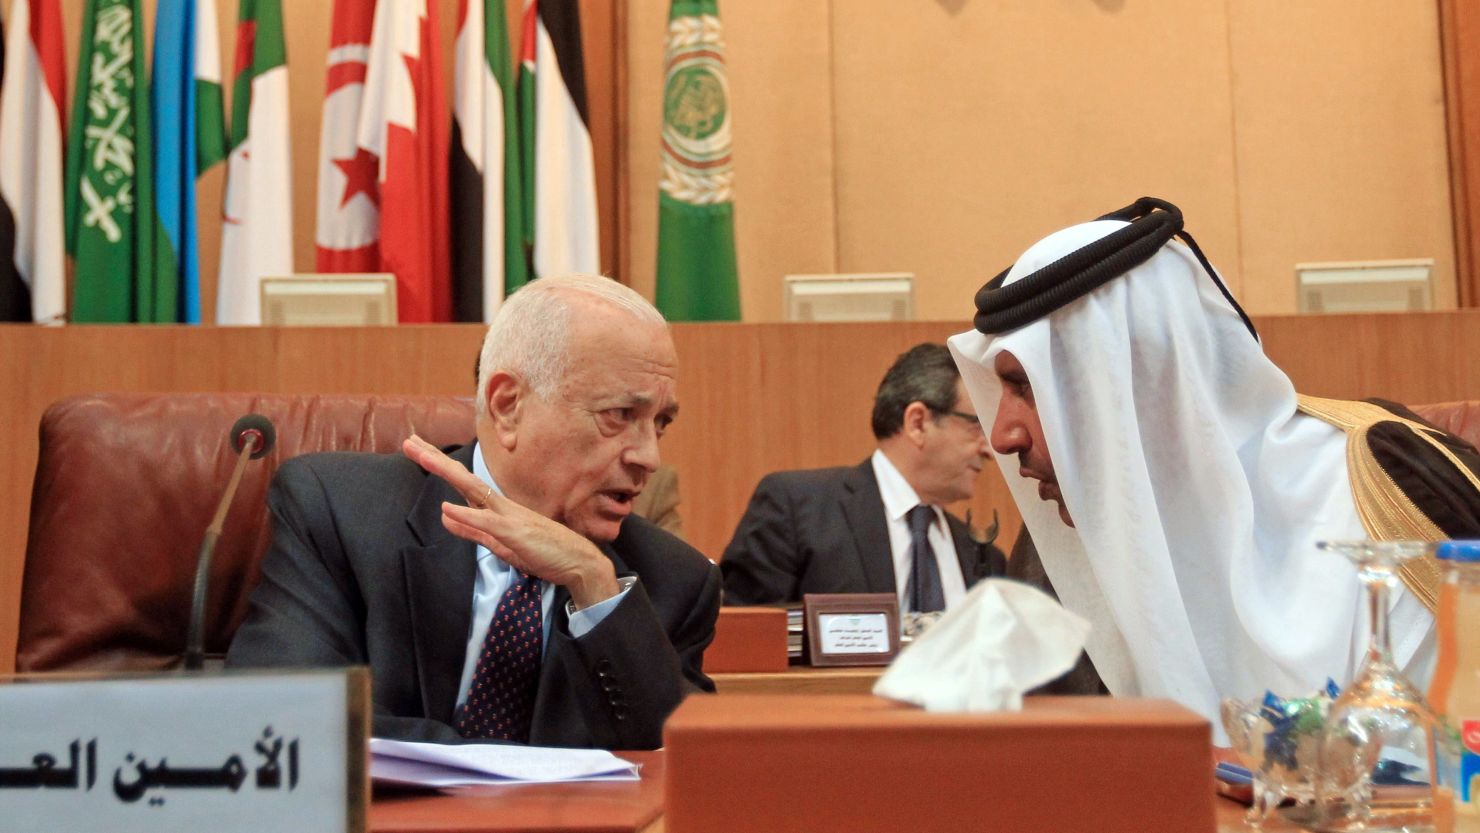 Qatari Prime Minister Sheikh Hamad bin Jassim, right, speaks to Arab League Secretary General Nabil al-Arabi on Saturday.